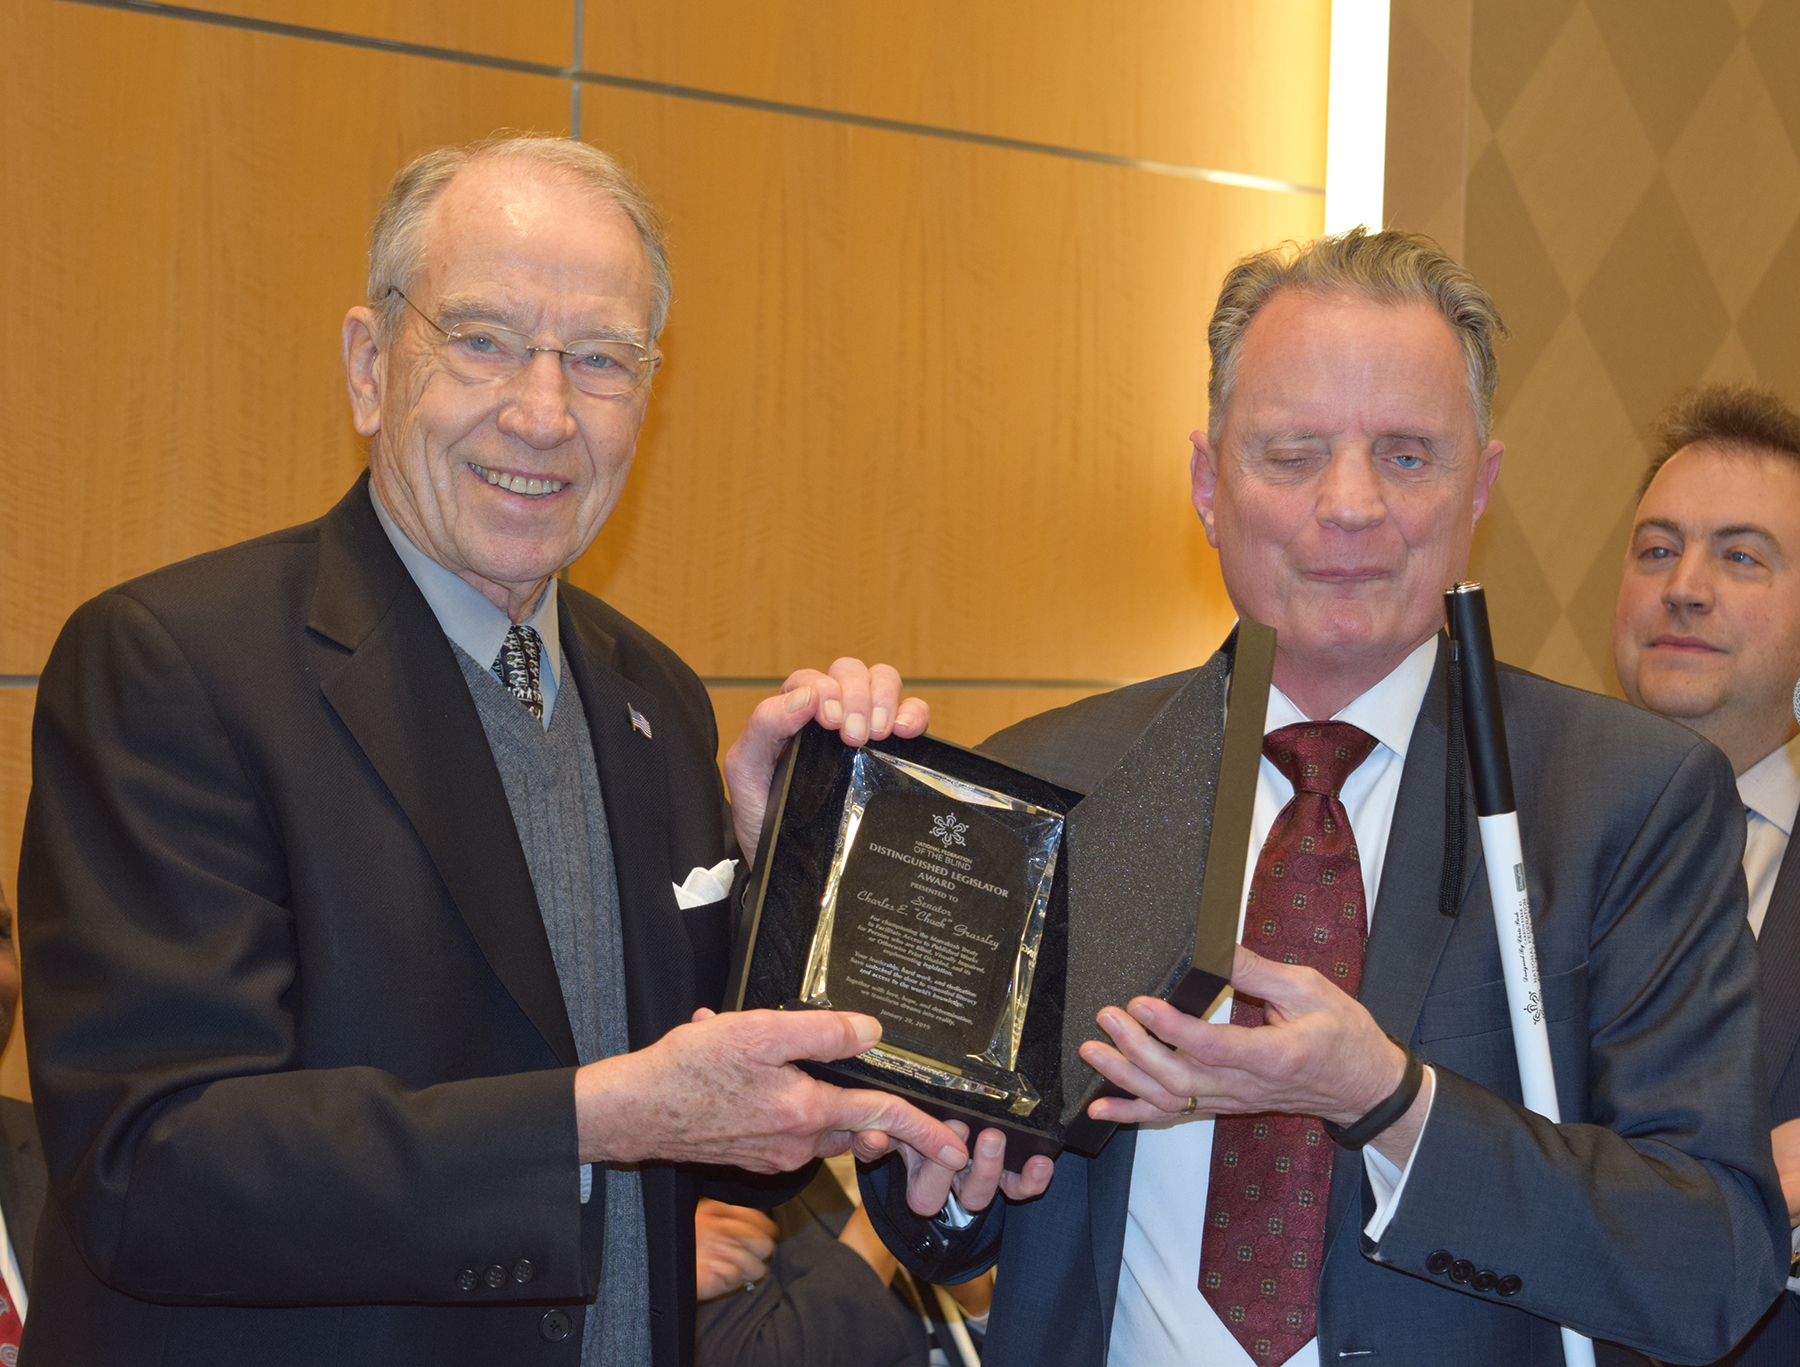 Senator Grassley poses with Dr. Marc Maurer while holding the Distinguished Legislator Award